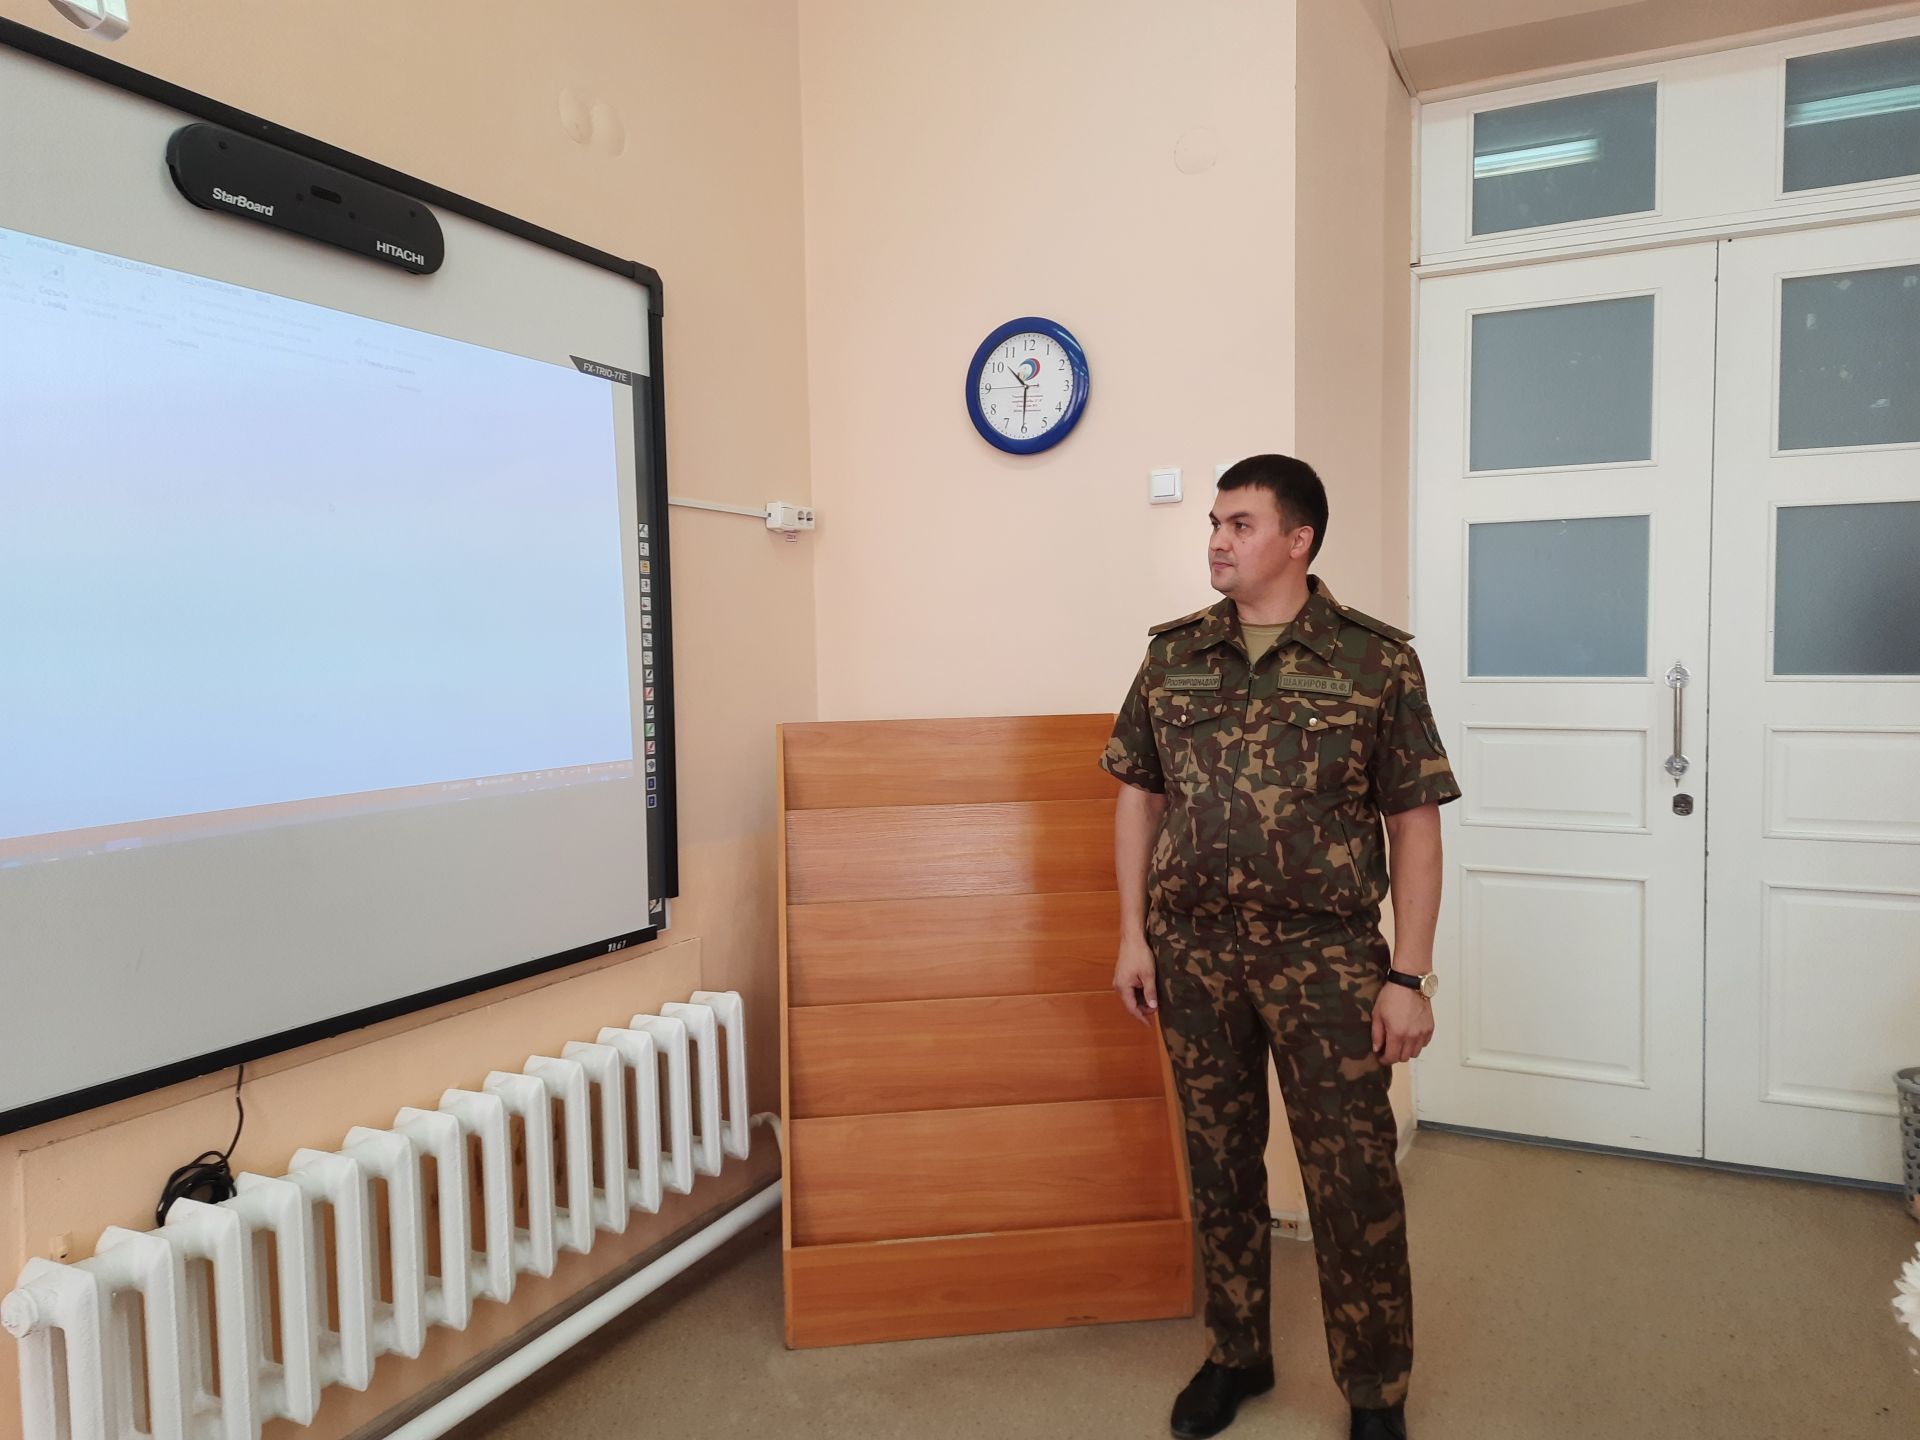 Урок по экологии стал первым в новом учебном году для девятиклассников чистопольской гимназии